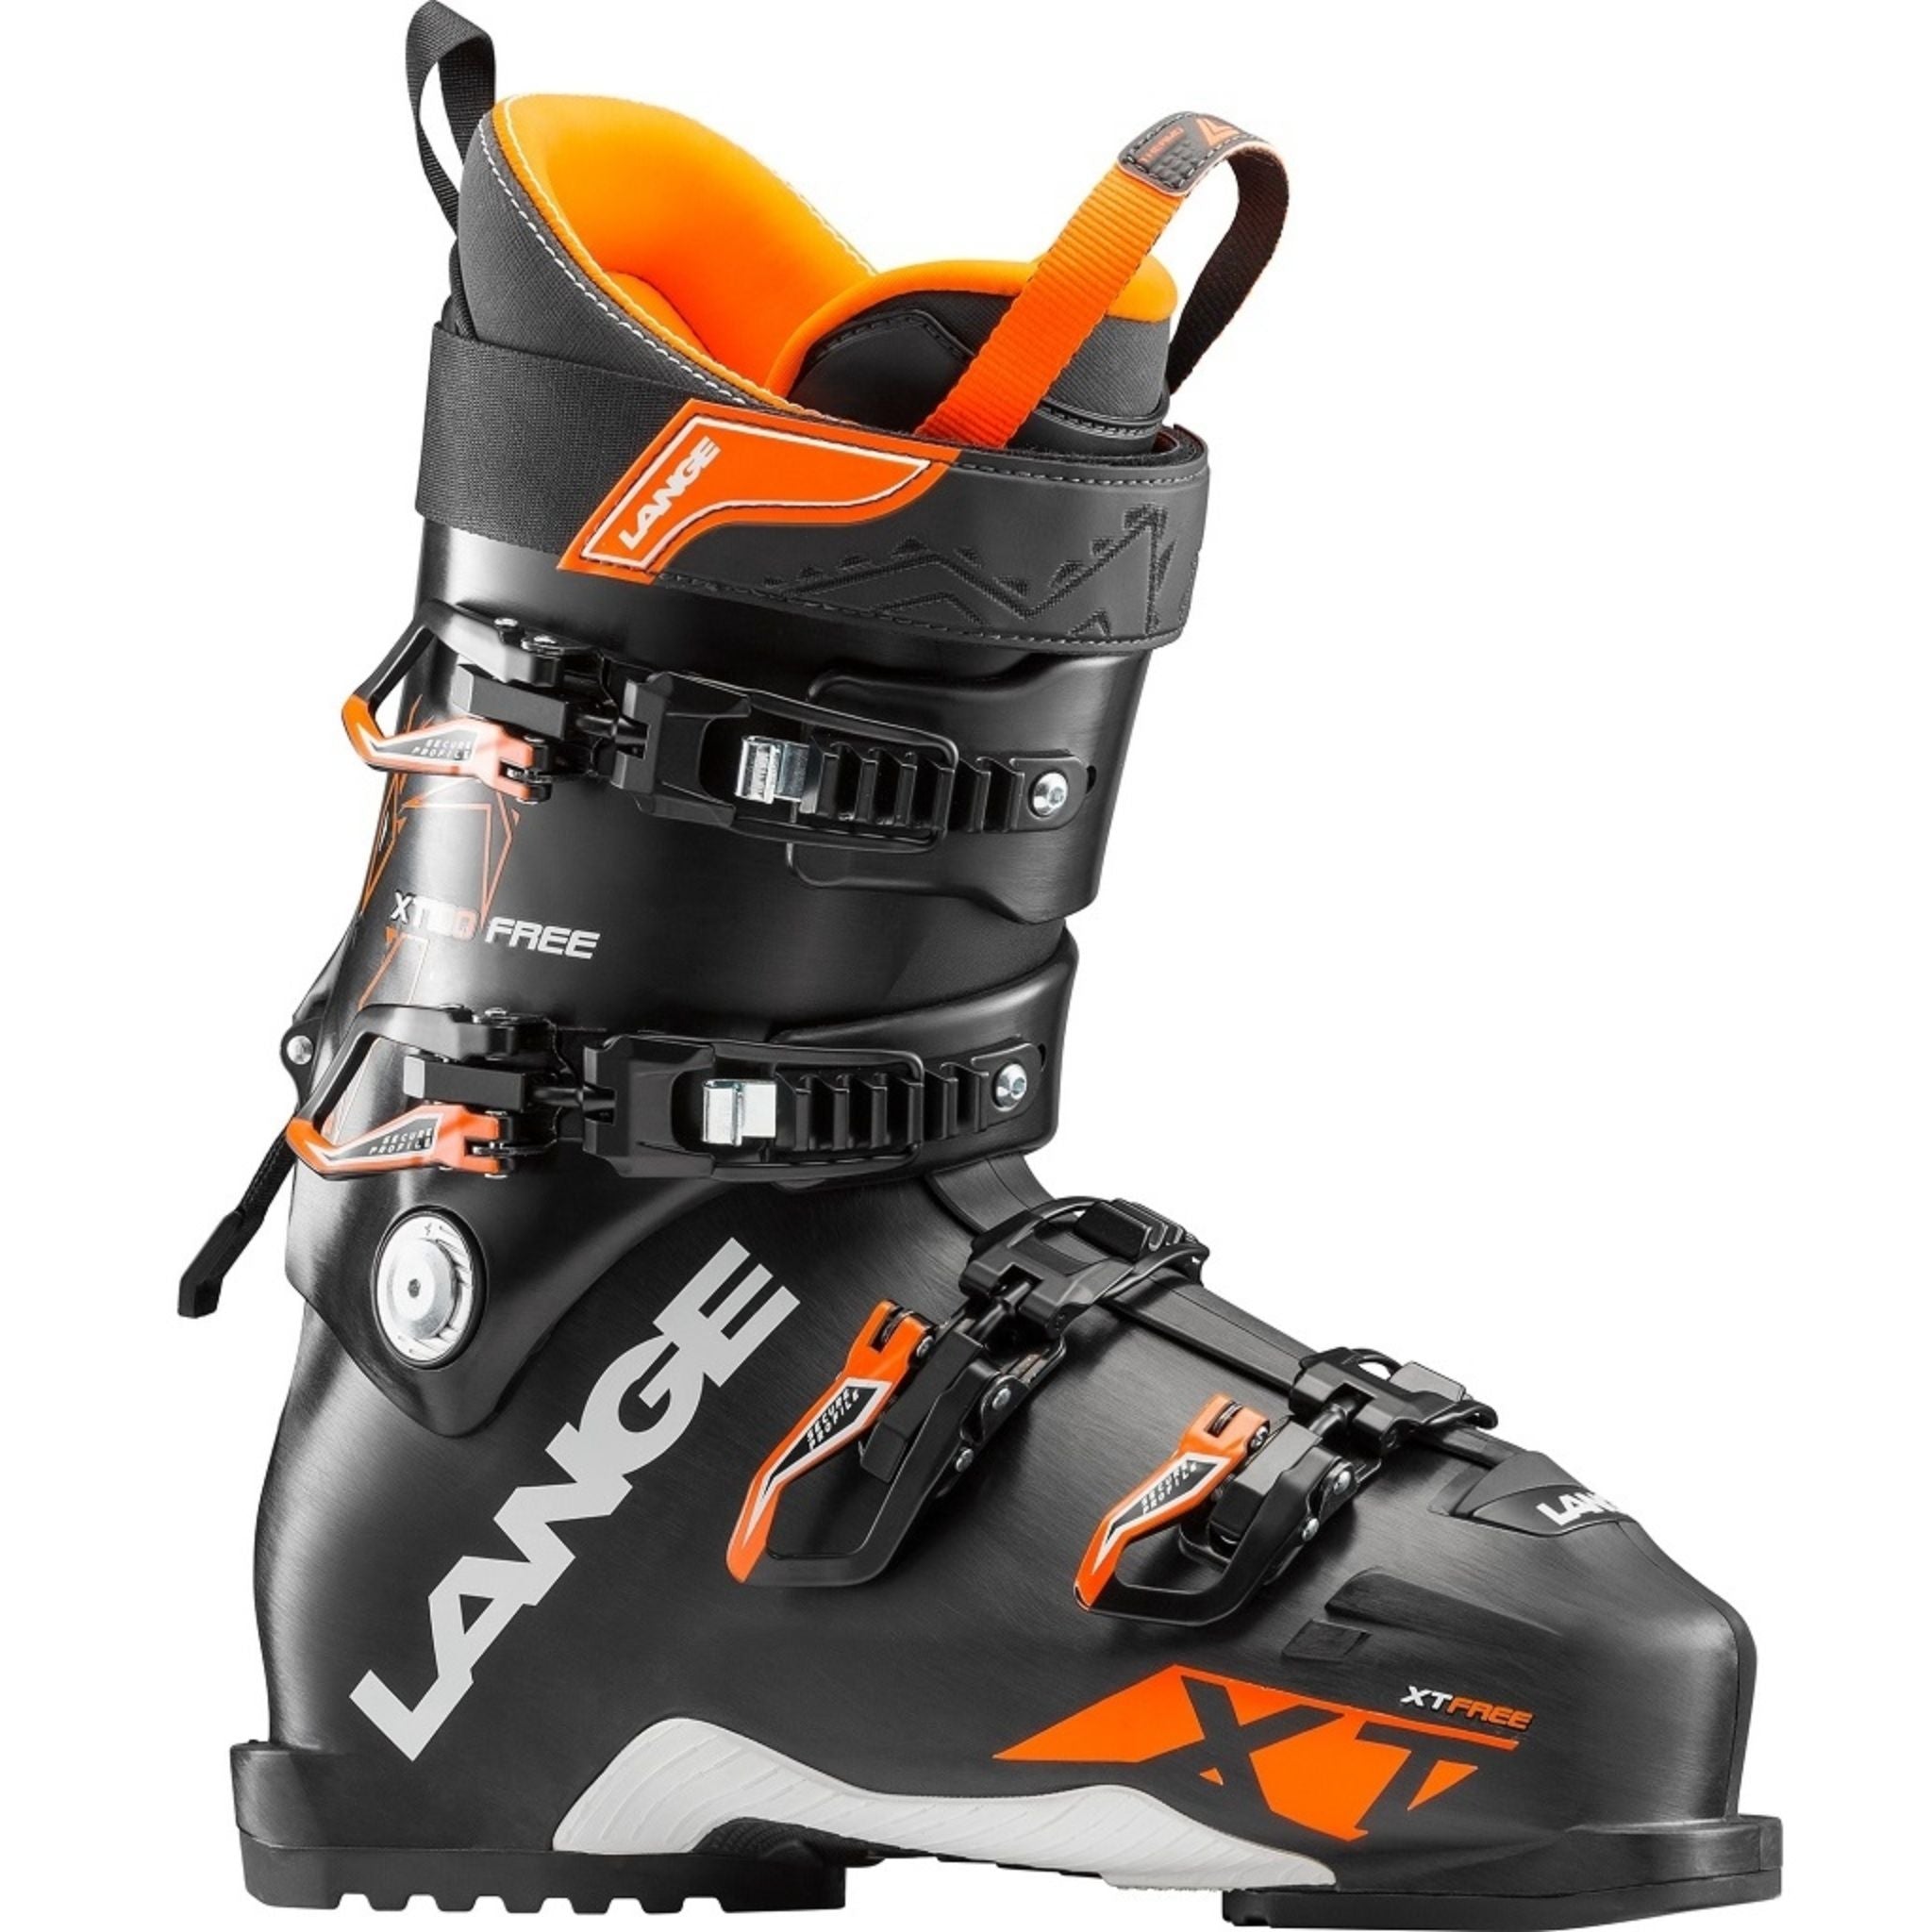 Lange Xt 100 Free Ski Boot 2019